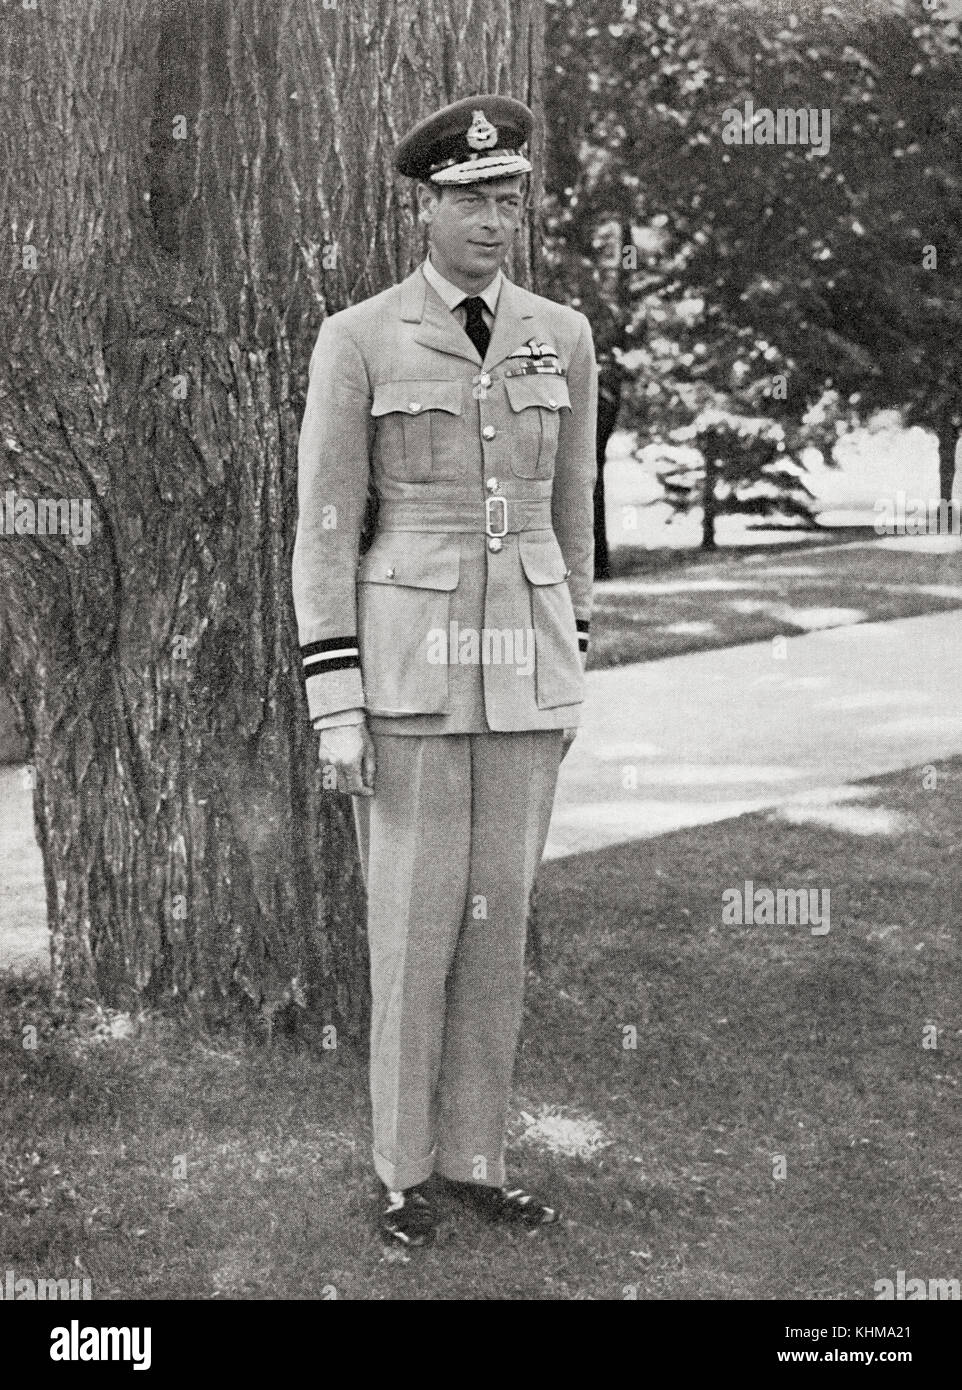 Prince George, Duc De Kent, 1902 – 1942. Quatrième fils du roi George V et de la reine Mary. Il a été tué alors qu'il était en service actif dans un accident aérien militaire. Banque D'Images